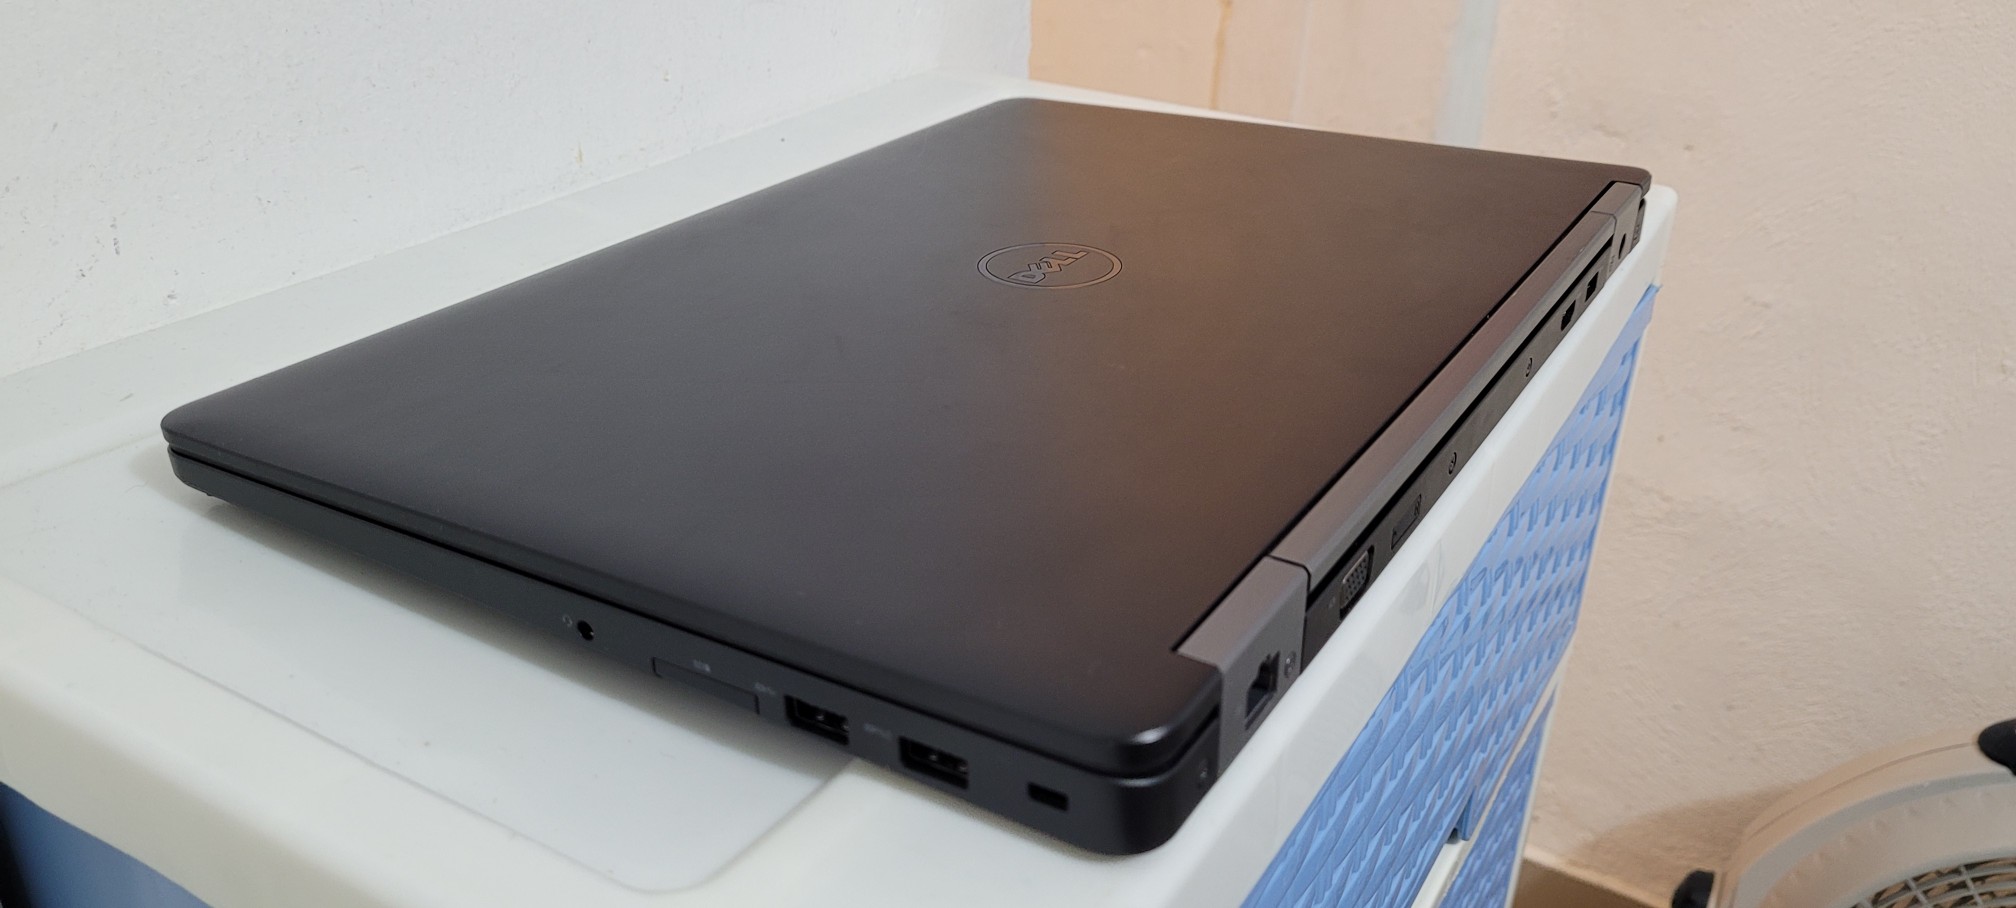 computadoras y laptops - Dell Slim 7490 14 Pulg Core i7 8va Gen Ram 16gb ddr4 Disco 512gb Solido 1080p 2